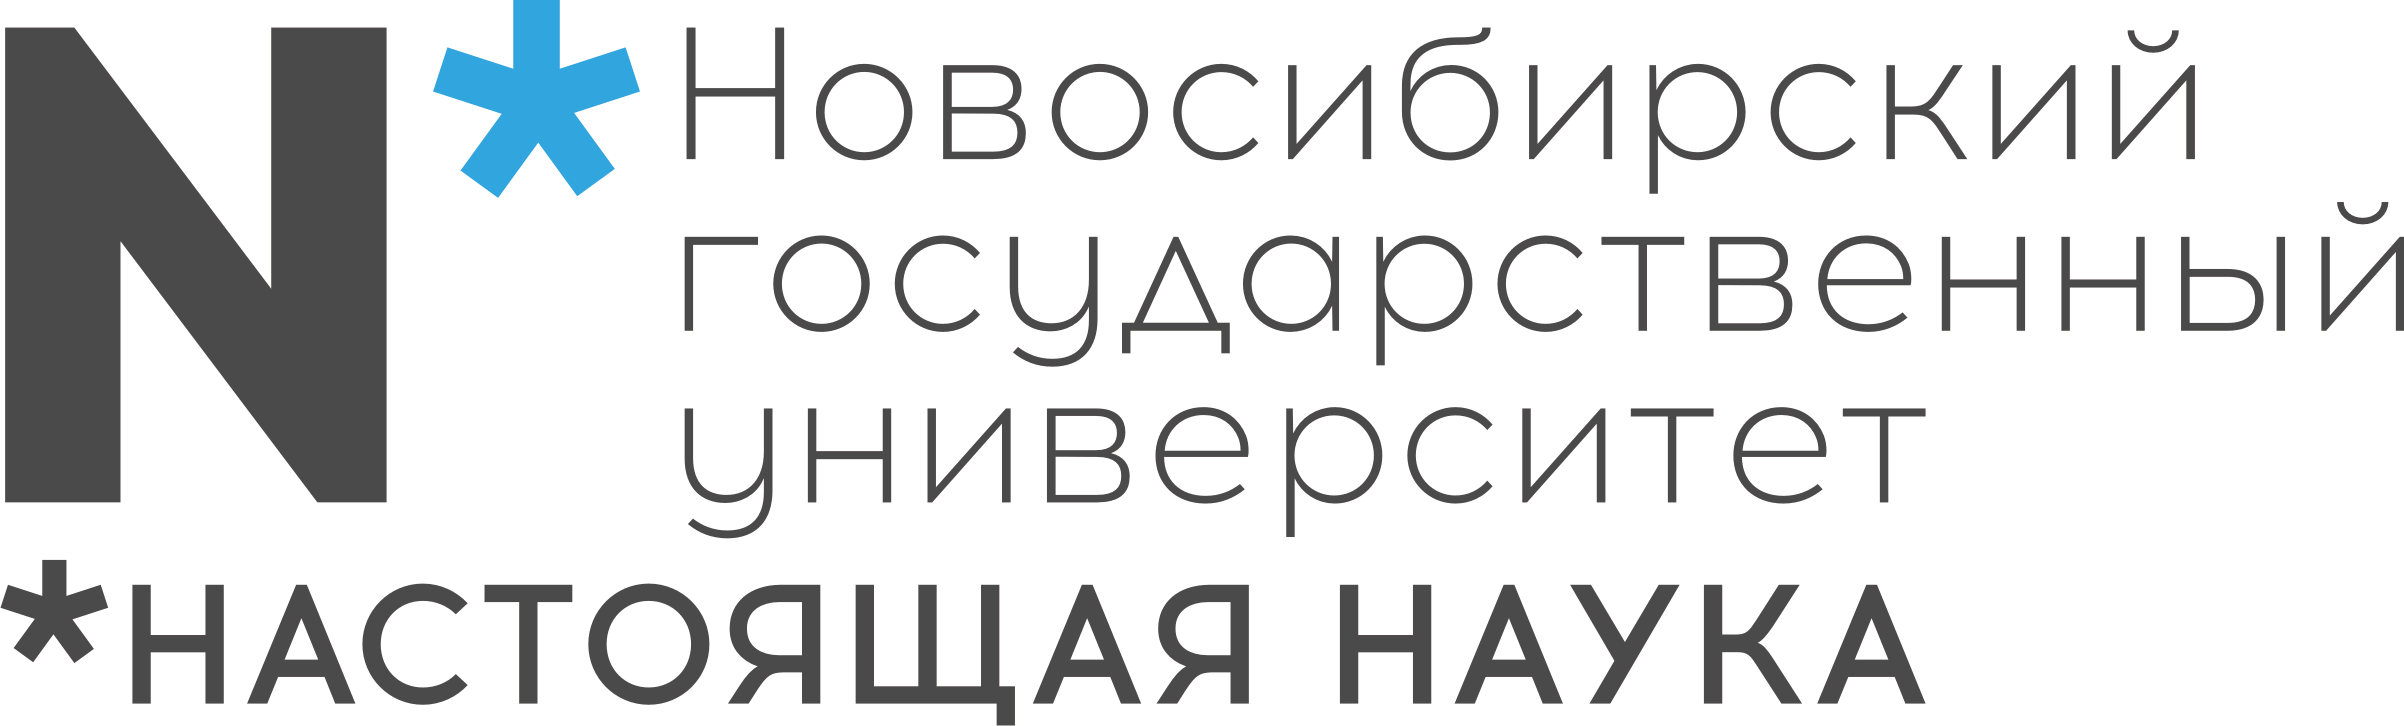 Логотип Новосибирский государственный университет